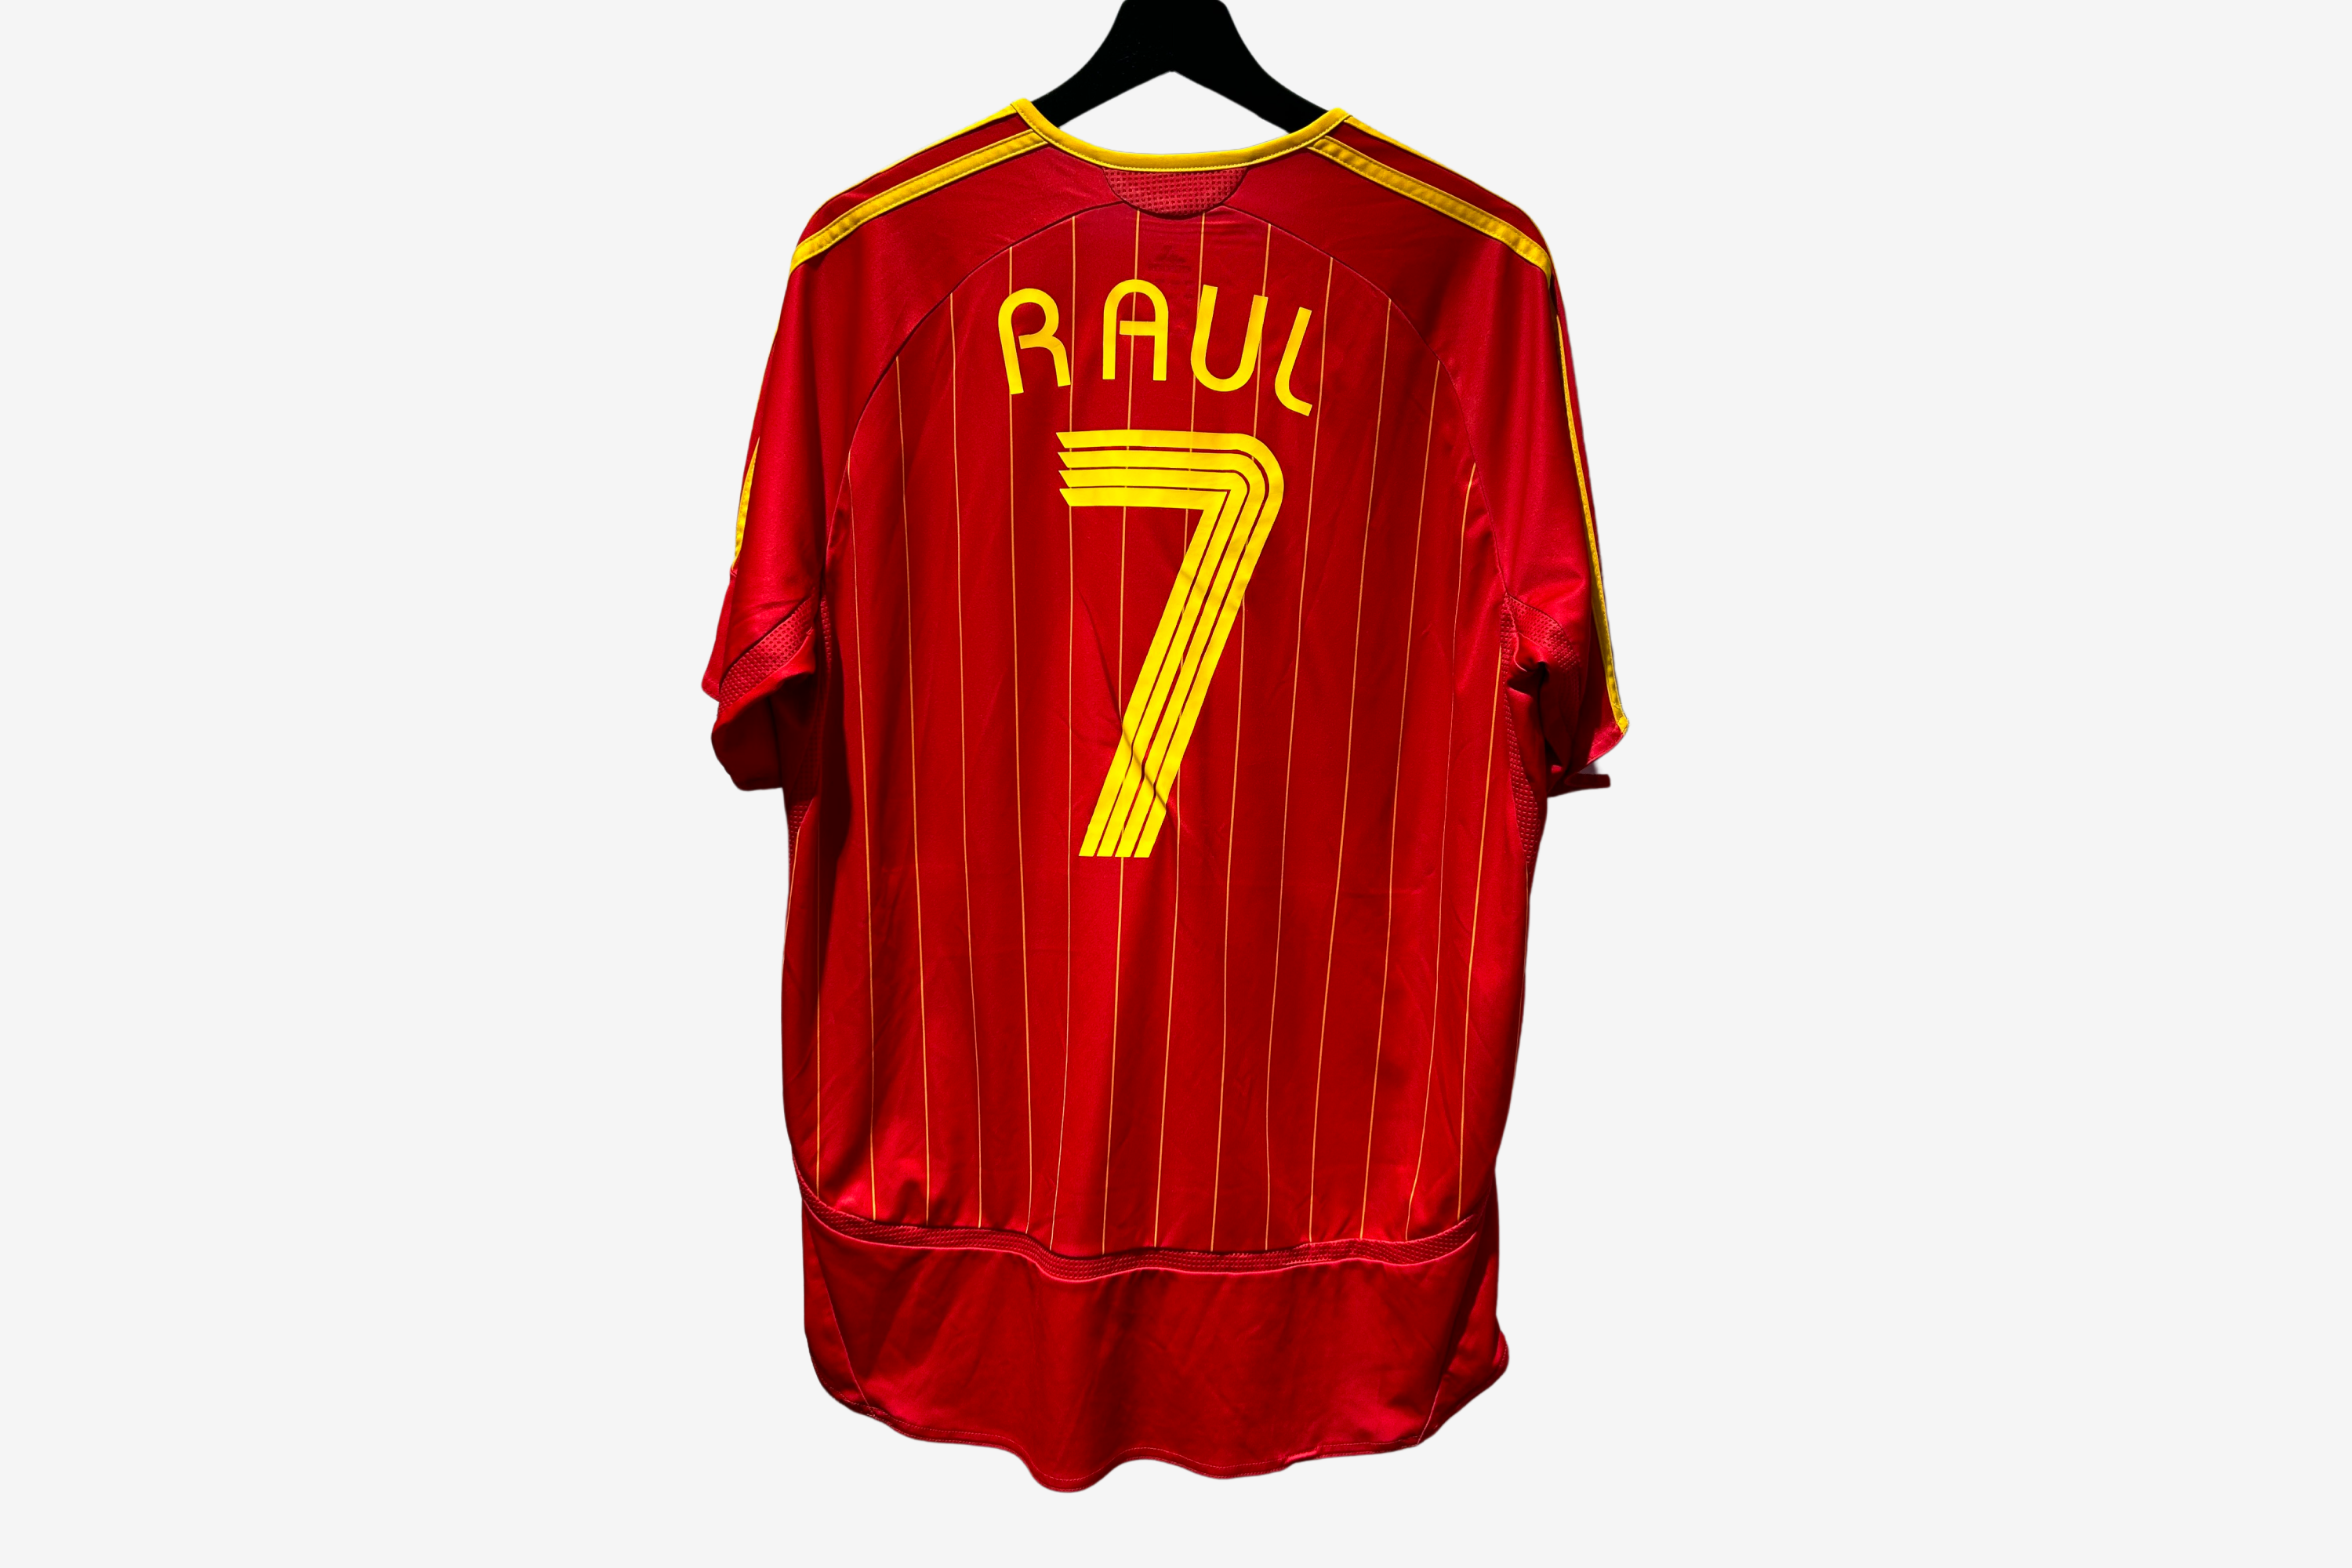 Adidas - Spain 2006 Home Football Shirt 'RAUL'